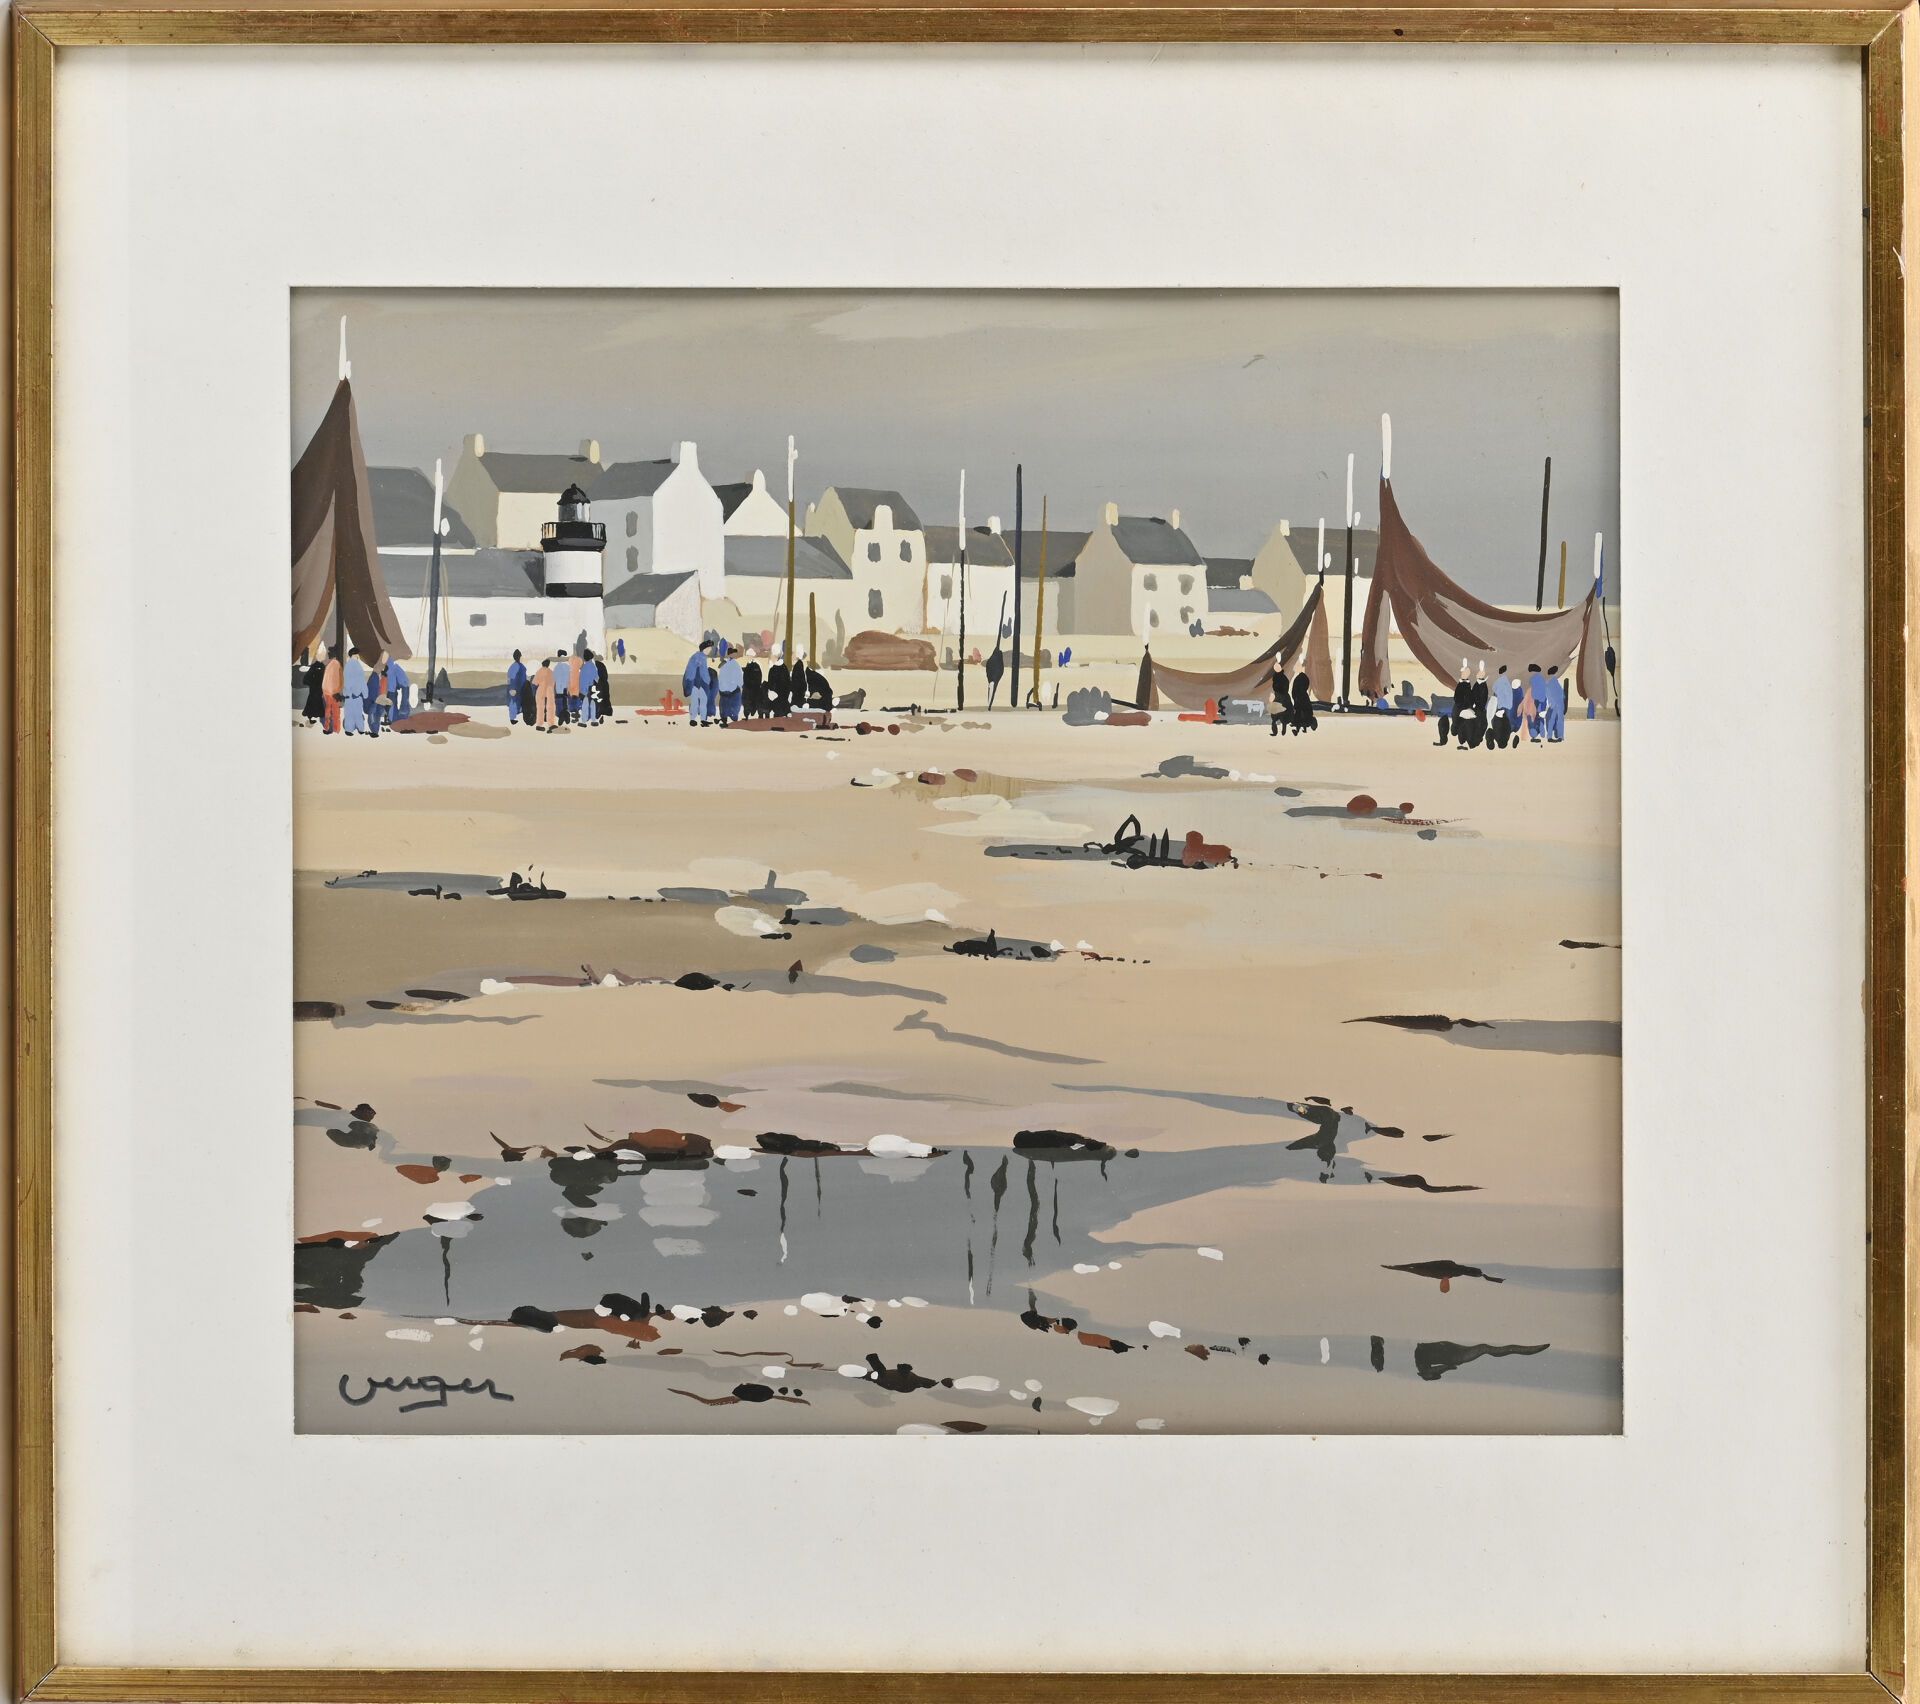 Null 安德烈-韦格尔（1912-1990）
布列塔尼海滩 
纸上水粉画
左下方有签名
20 x 35 厘米